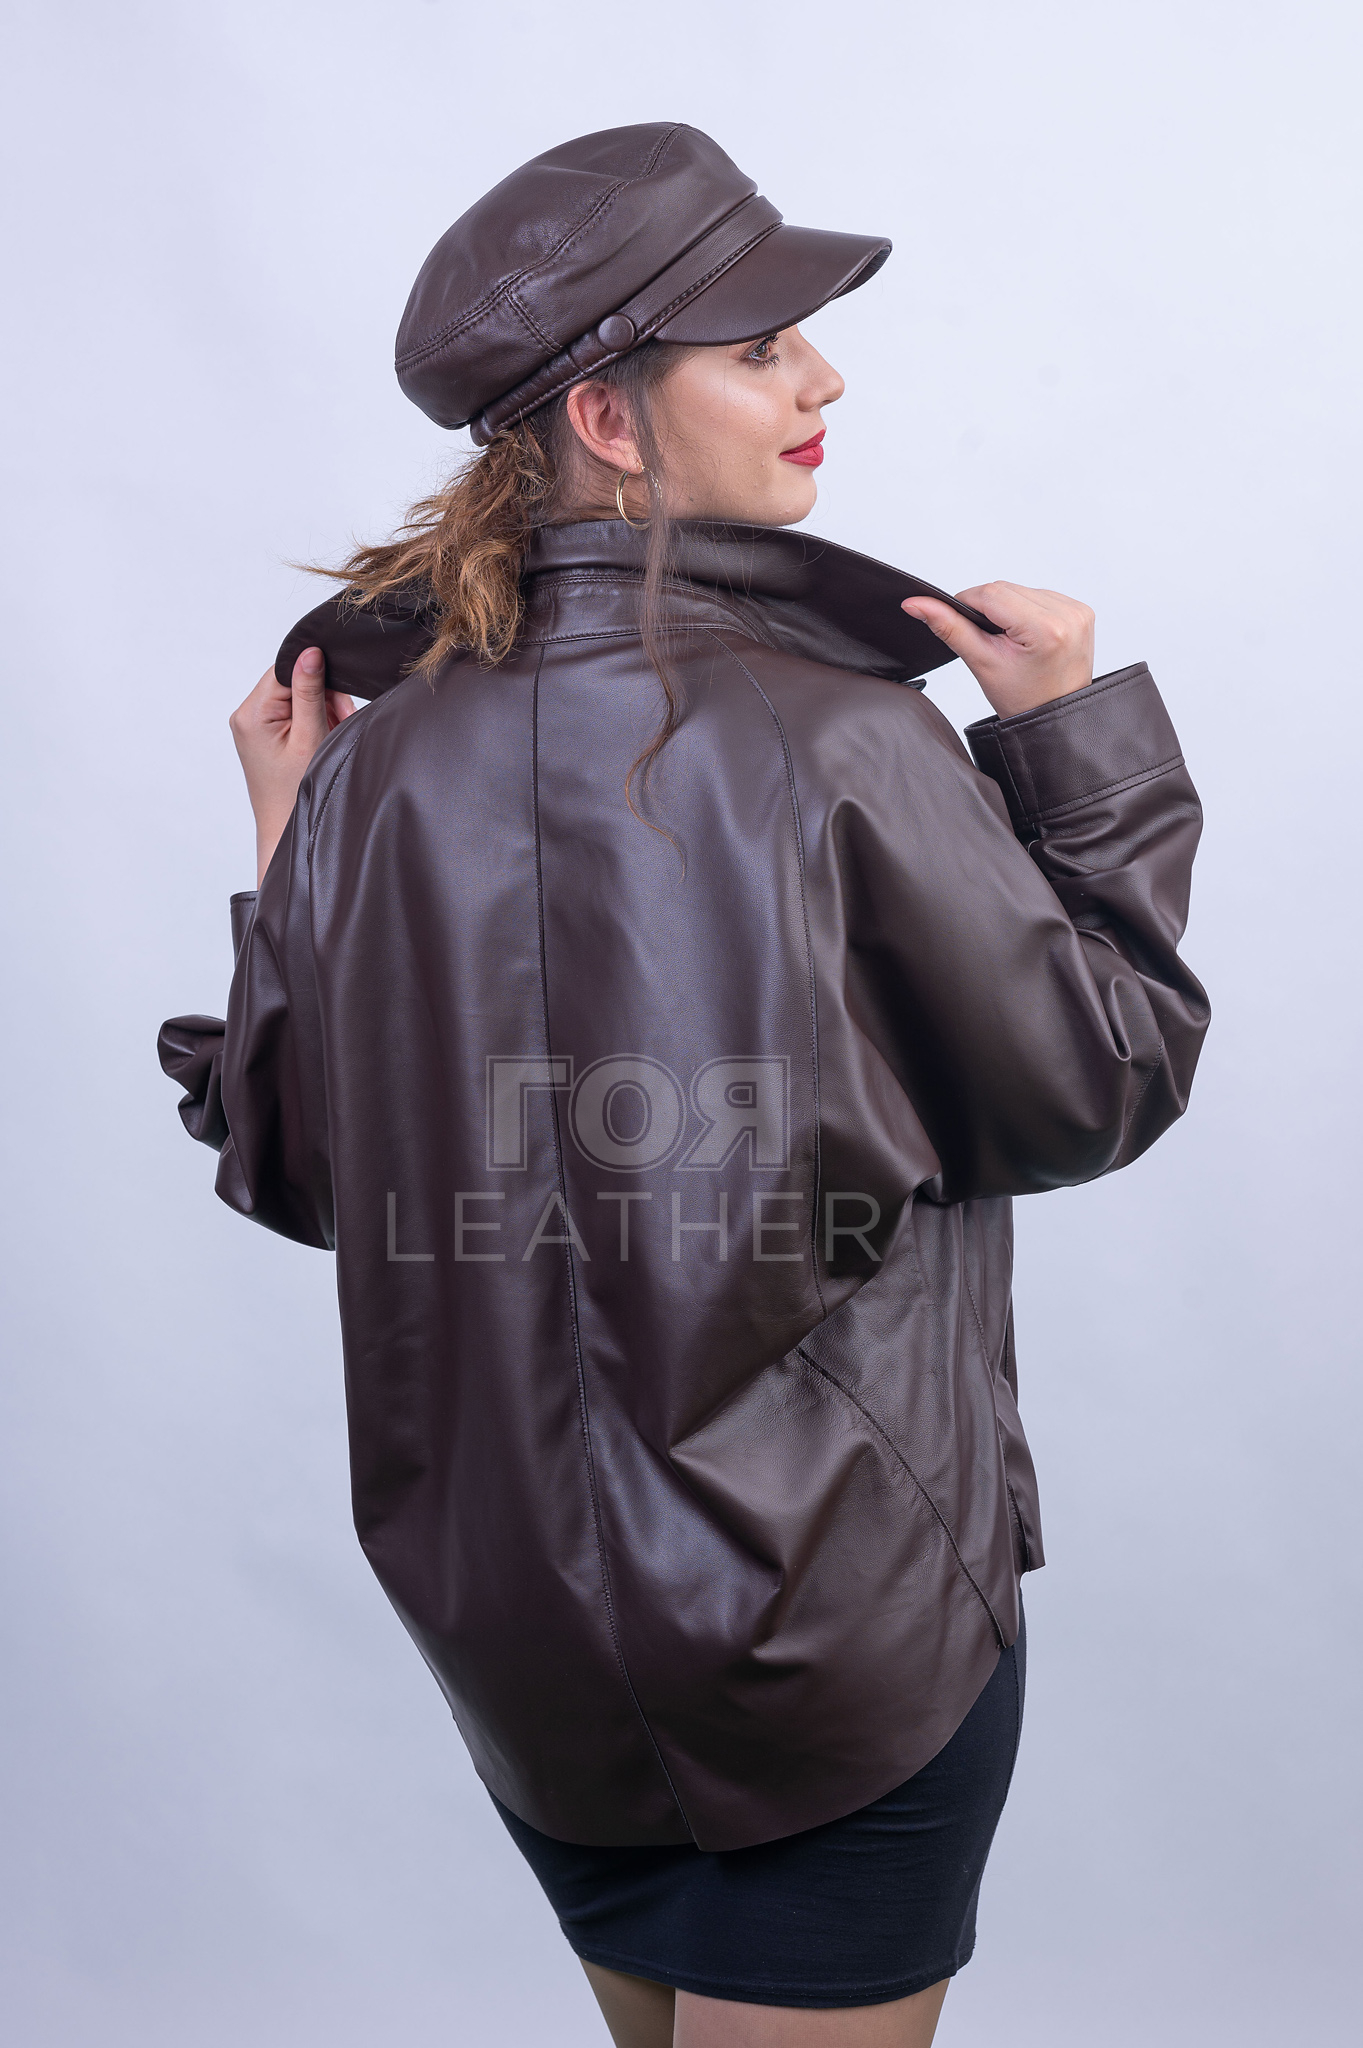 Дамско кожено яке-риза ГОЯ Leather. Нов модел кожено яке стил риза. Моделът е изработен от висококачествена агнешка напа, 100% естествена кожа.